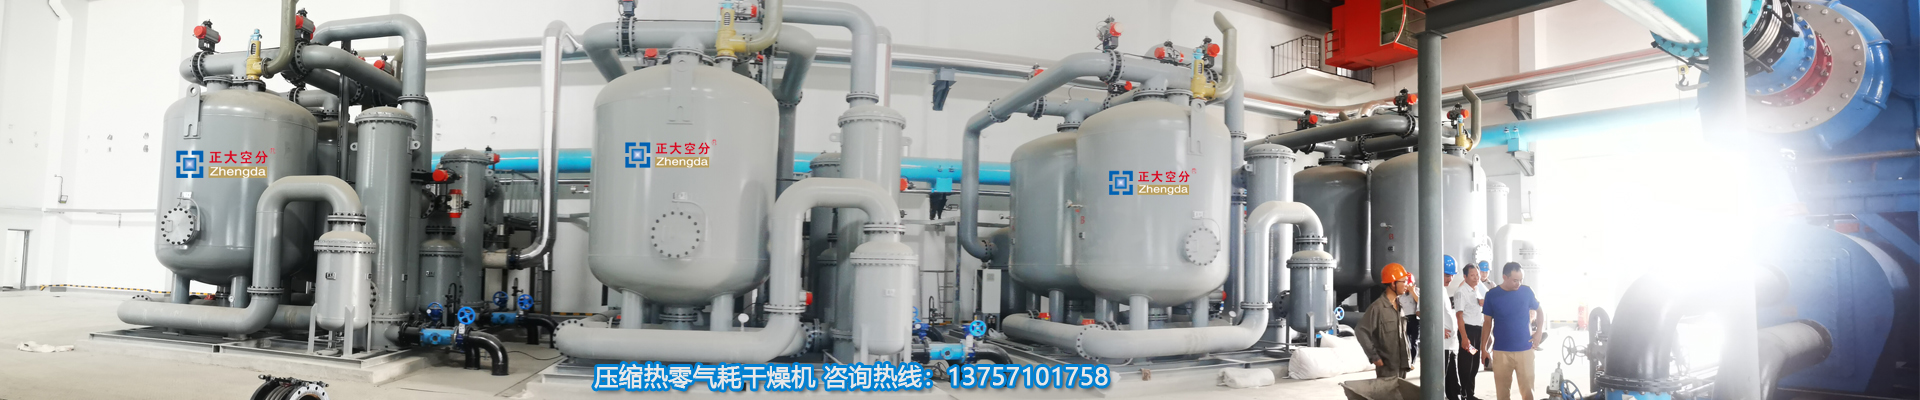 VPSA工业制氧设备-零气耗干燥机、余热再生干燥机、余热式干燥器生产厂家、浙江正大空分设备有限公司